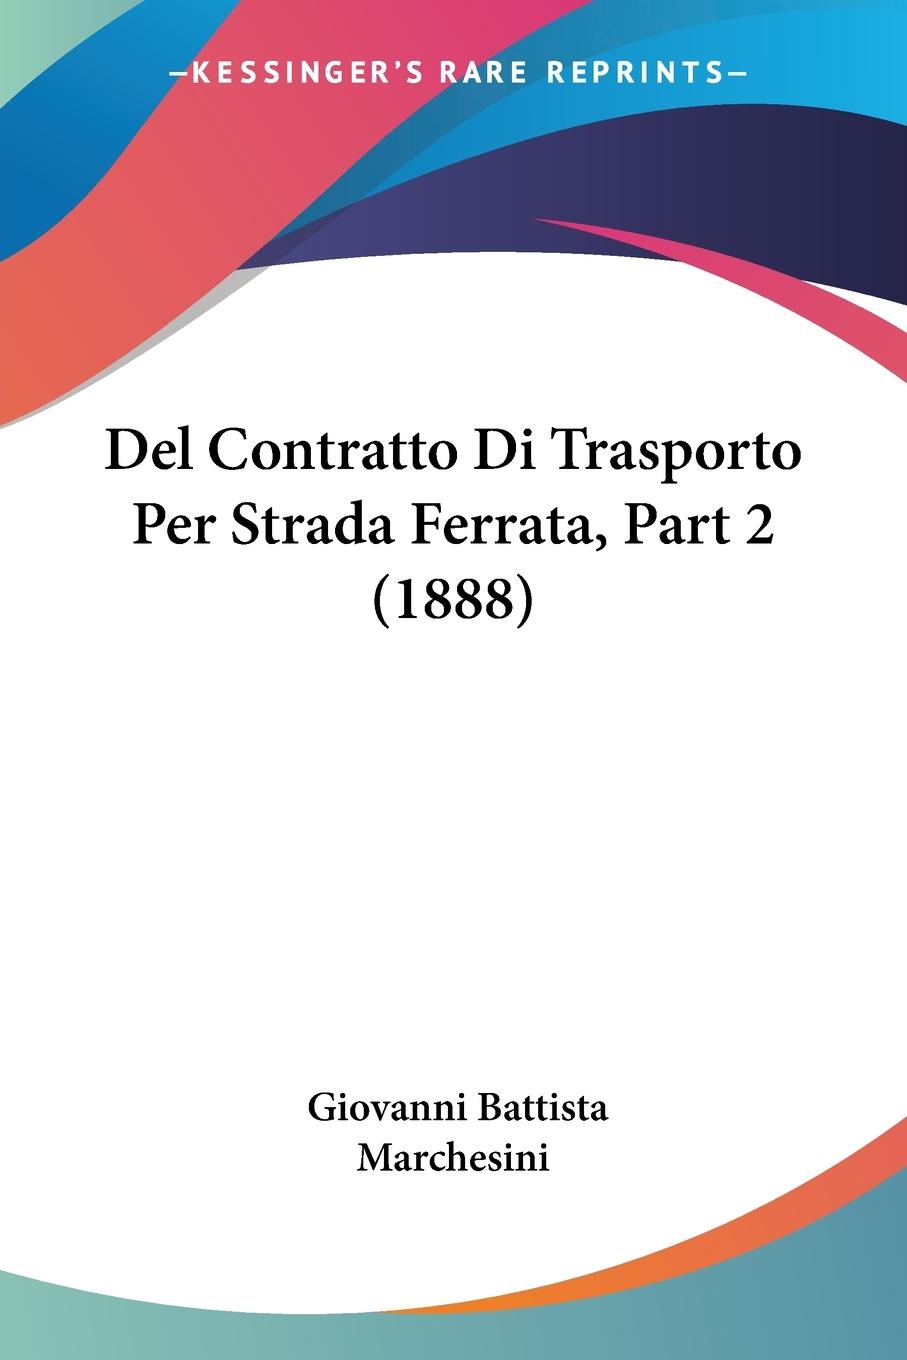 Del Contratto Di Trasporto Per Strada Ferrata, Part 2 (1888) - Marchesini, Giovanni Battista